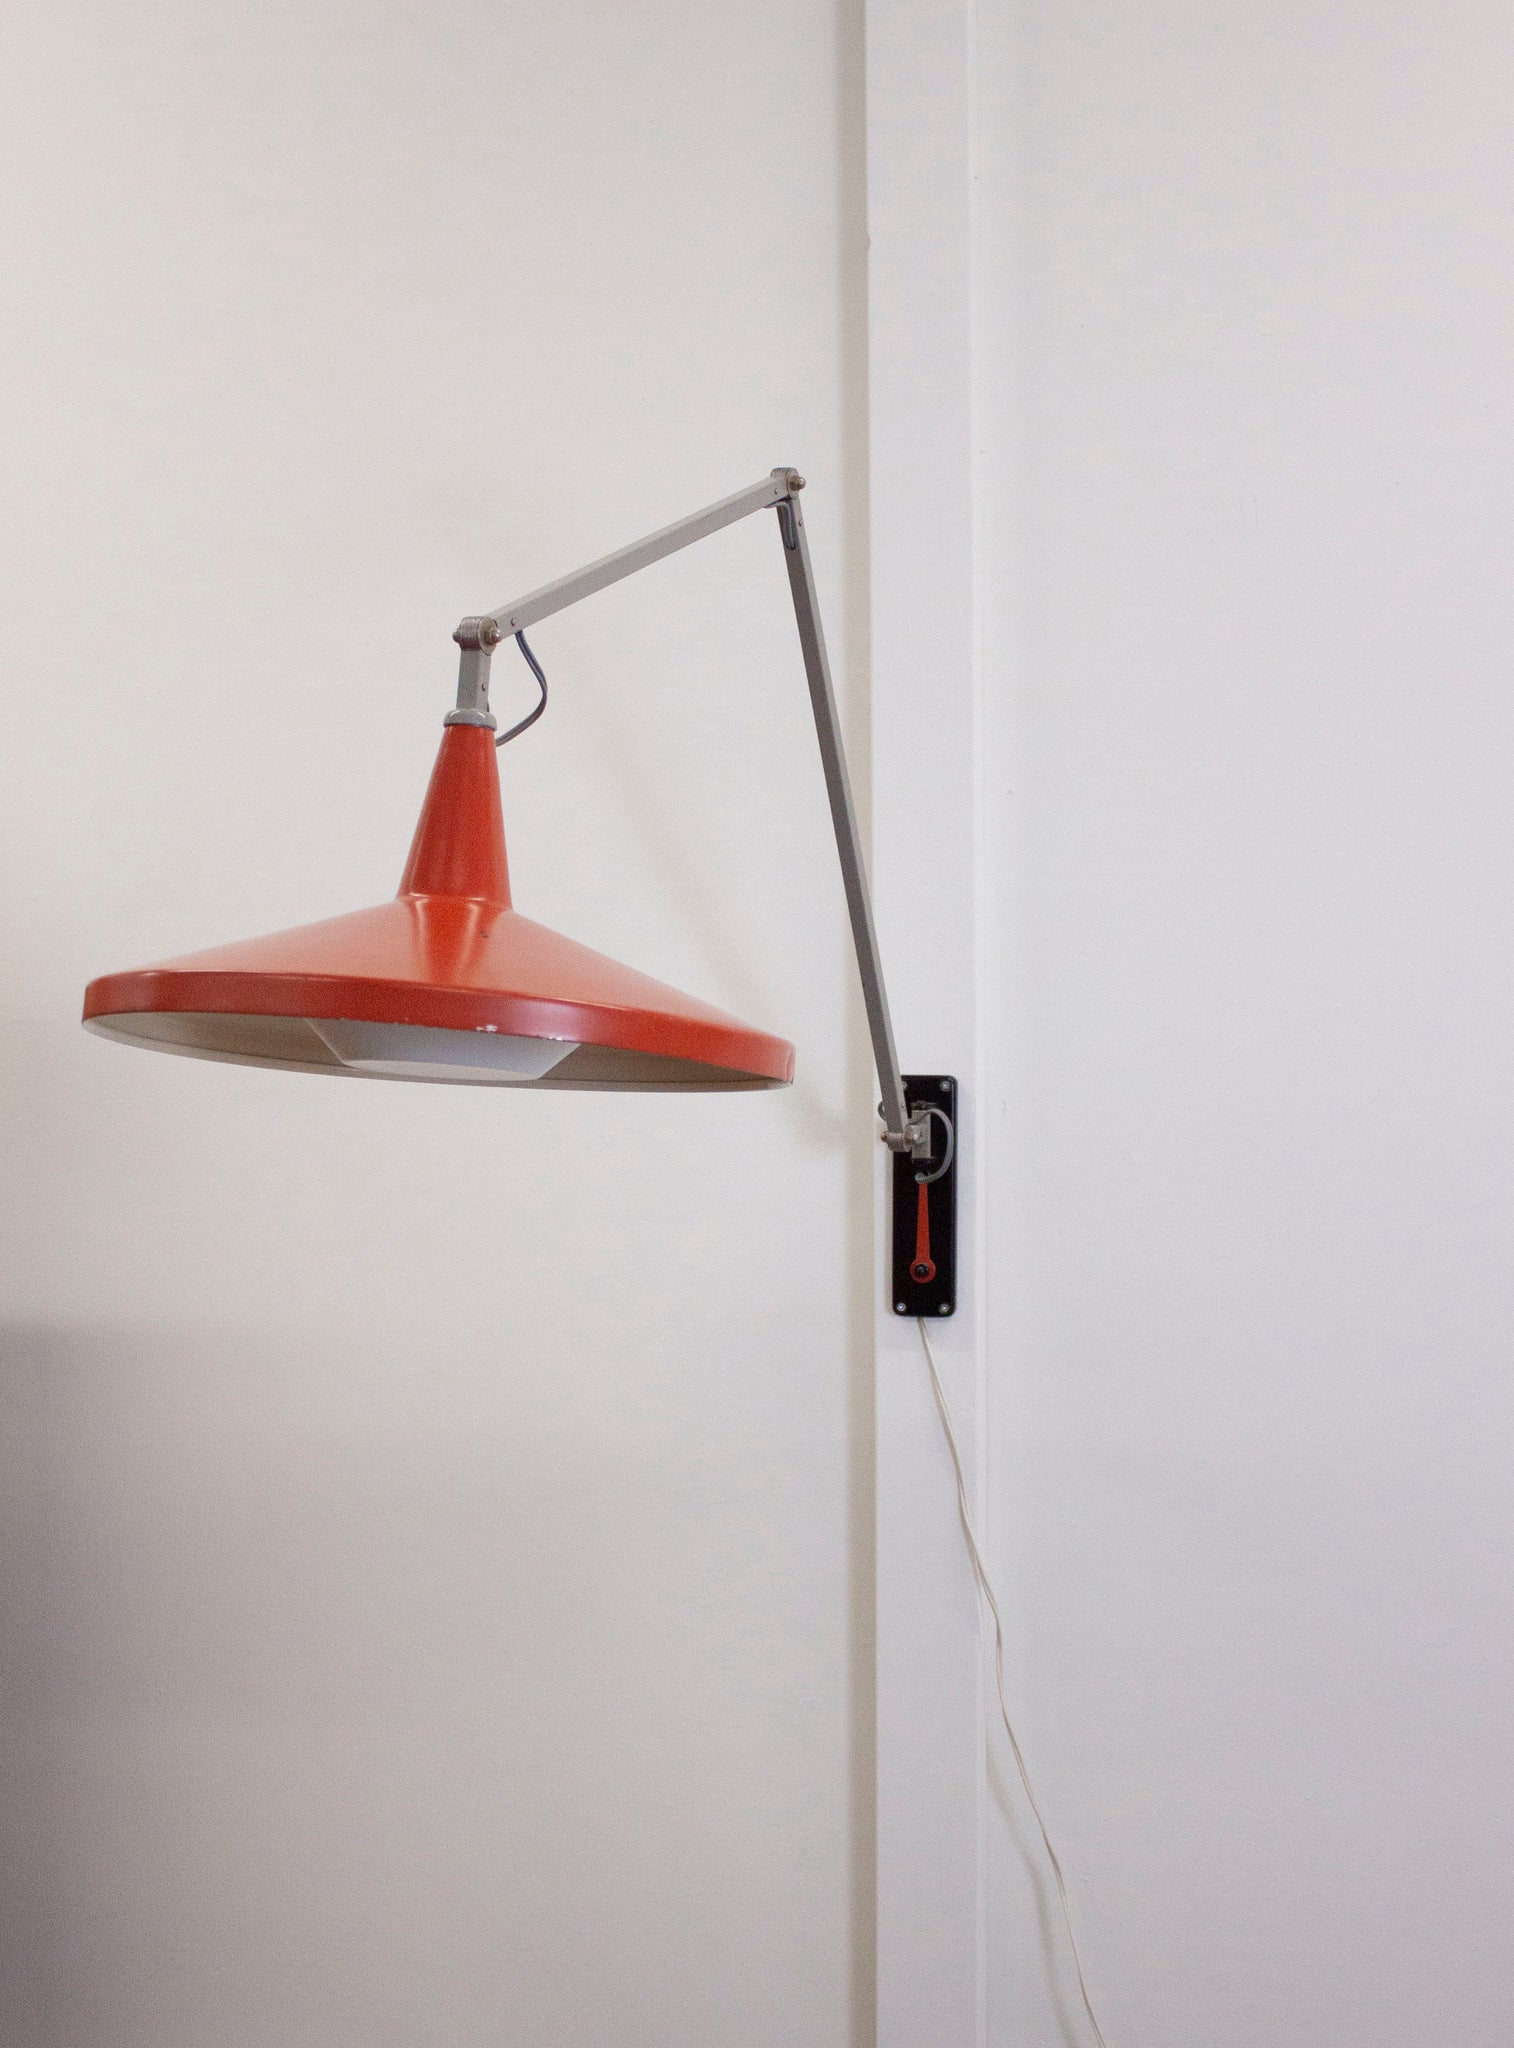 Gispen 4050 Panama Wall Lamp by Wim Rietveld (Red)